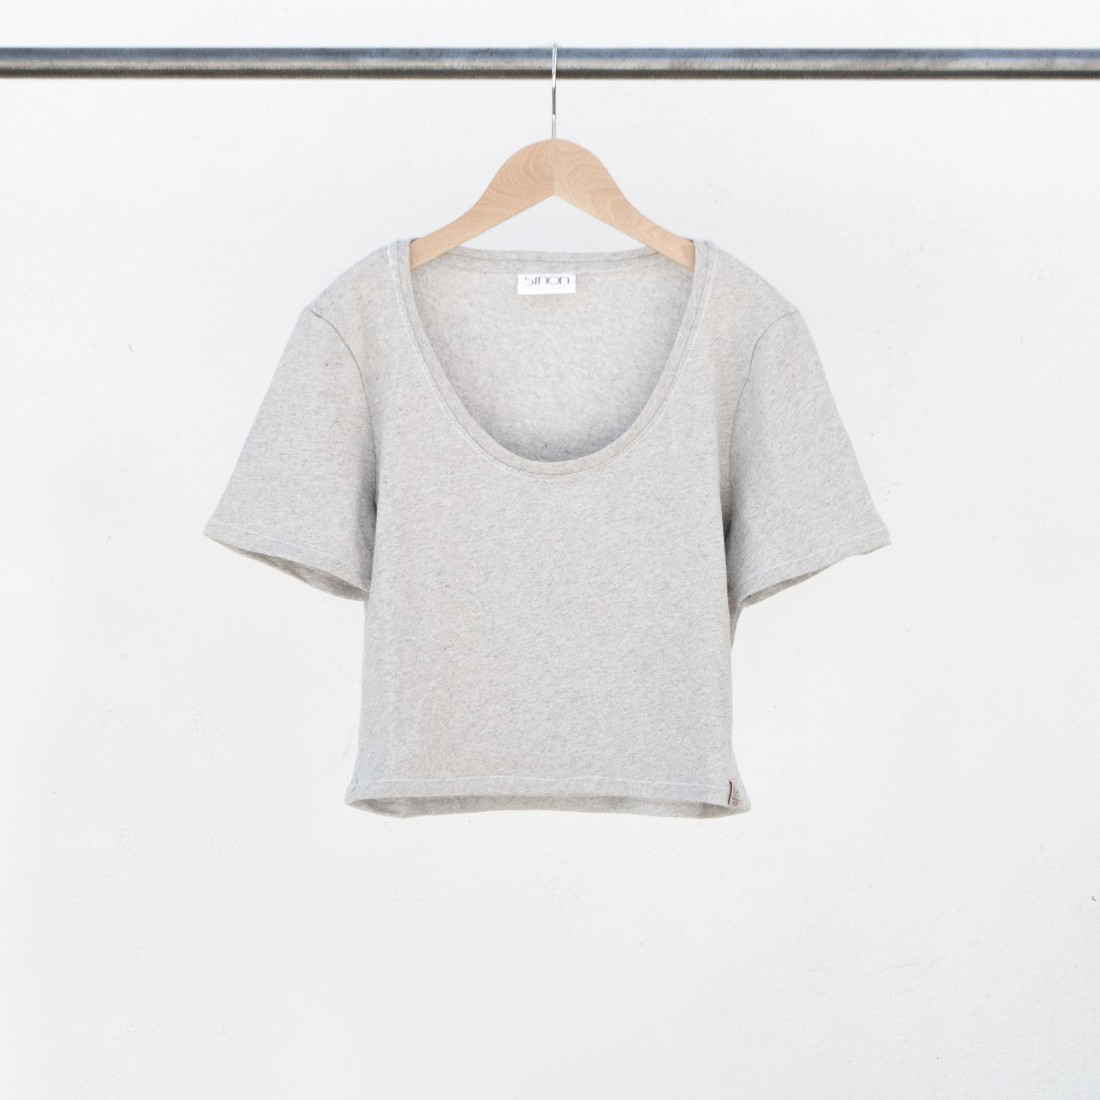 Tee-shirt femme crop top décolleté rond en coton recyclé gris chiné. Fabriqué en France